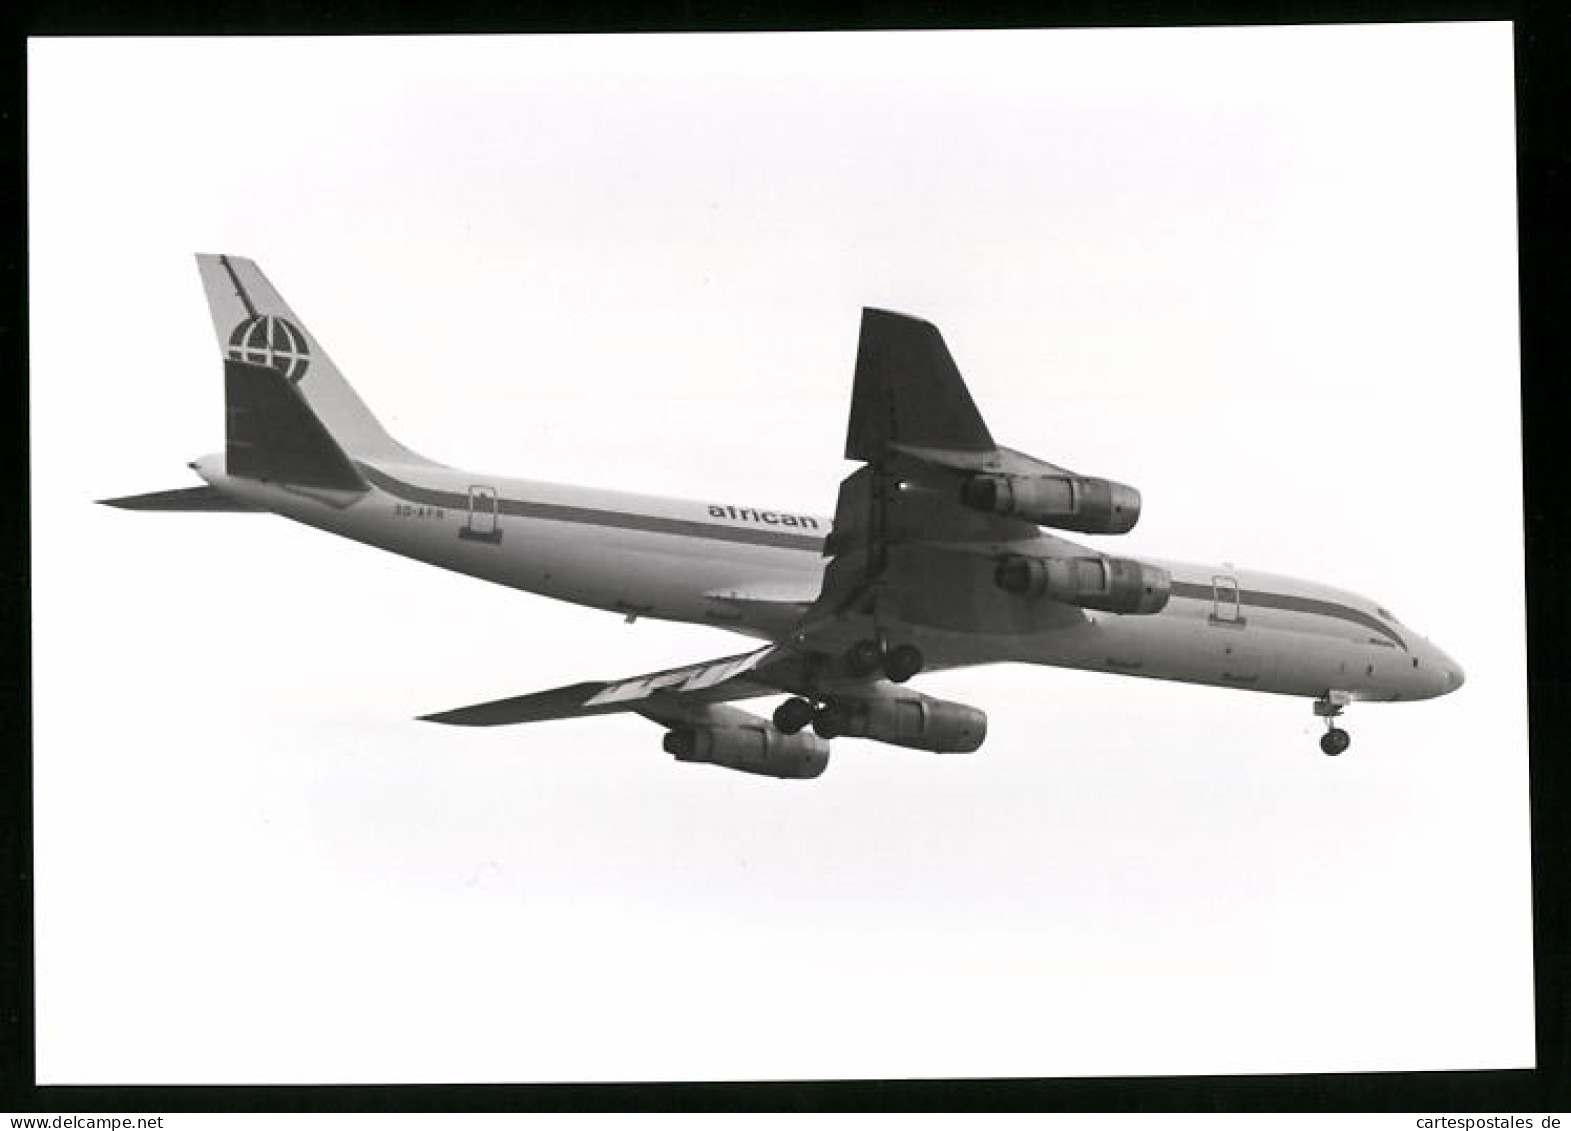 Fotografie Flugzeug Douglas DC-8, Passagierflugzeug Der African International, Kennung 3D-AFR  - Aviation